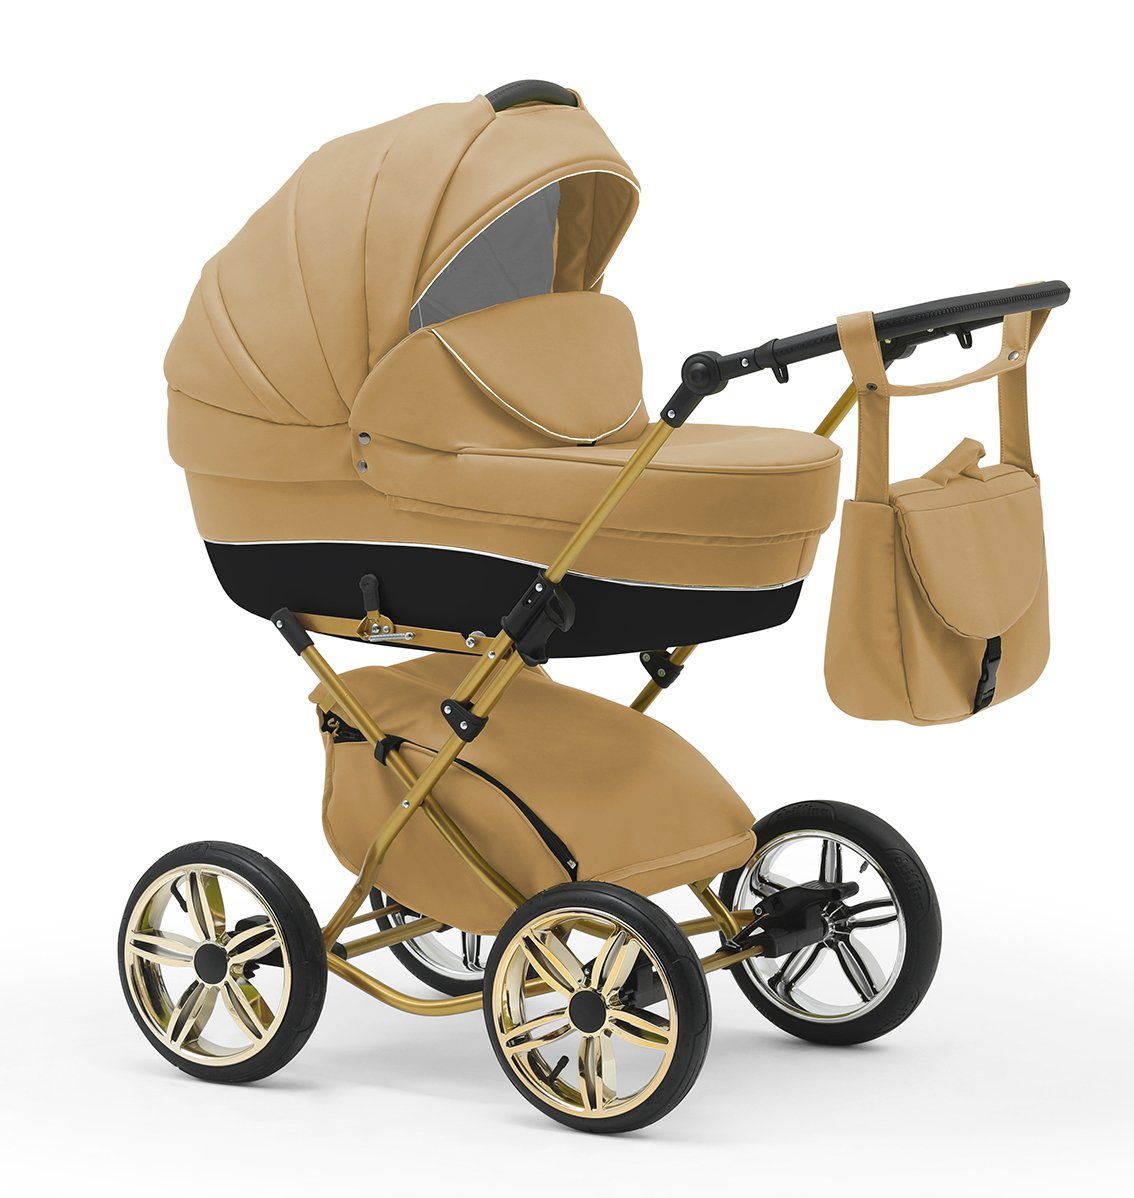 inkl. Teile Designs - in 13 - 3 1 10 babies-on-wheels Beige Sorento in Autositz Kombi-Kinderwagen